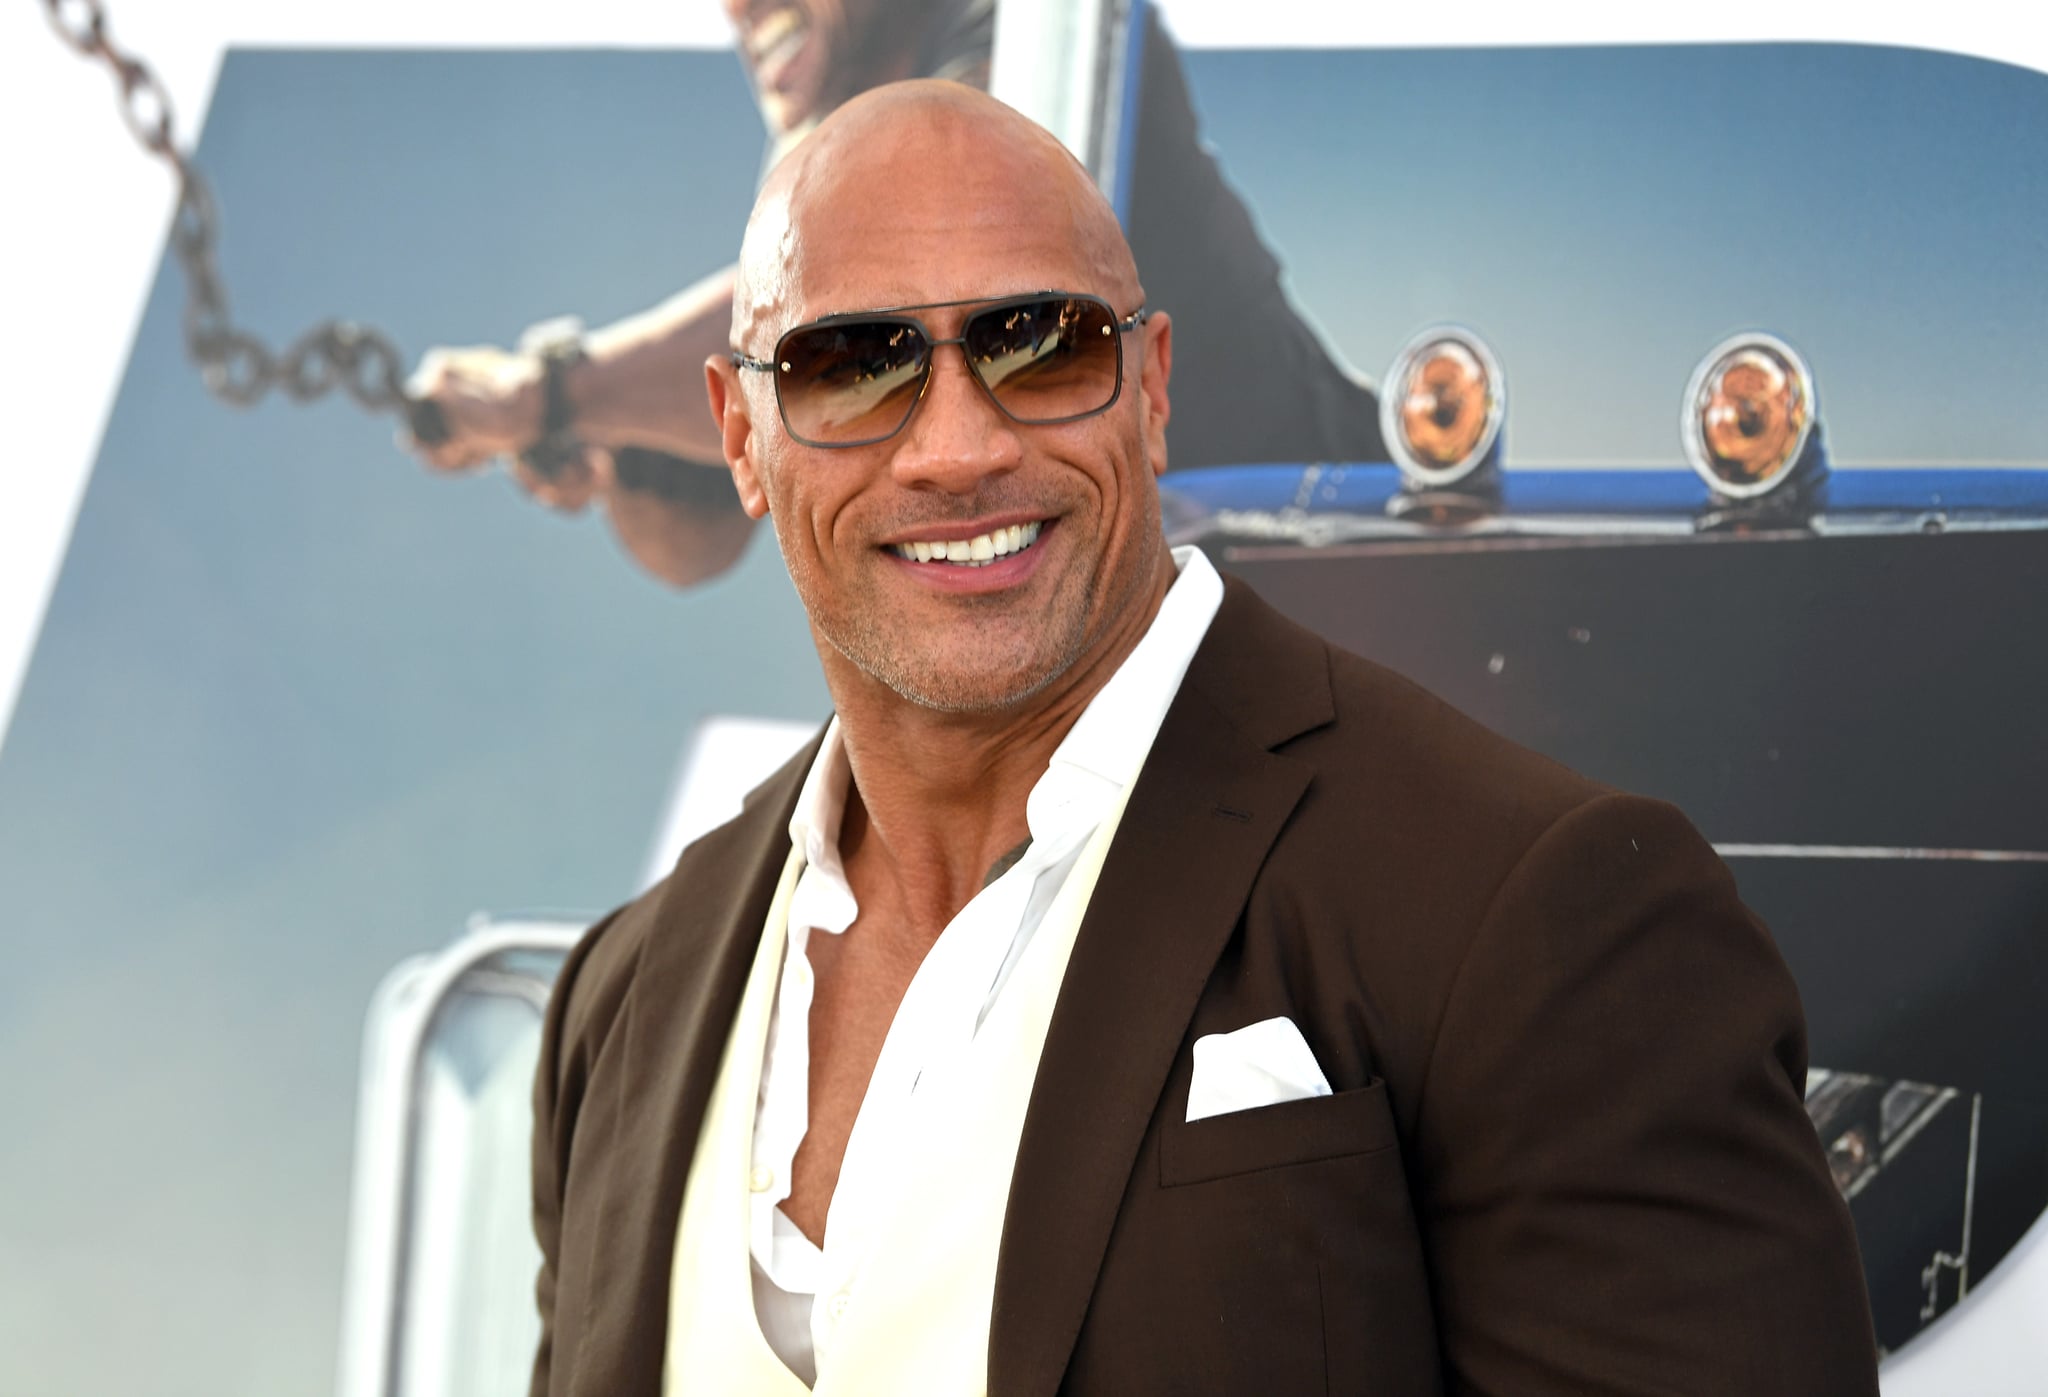 Hottest Pictures of Dwayne "The Rock" Johnson | POPSUGAR Celebrity